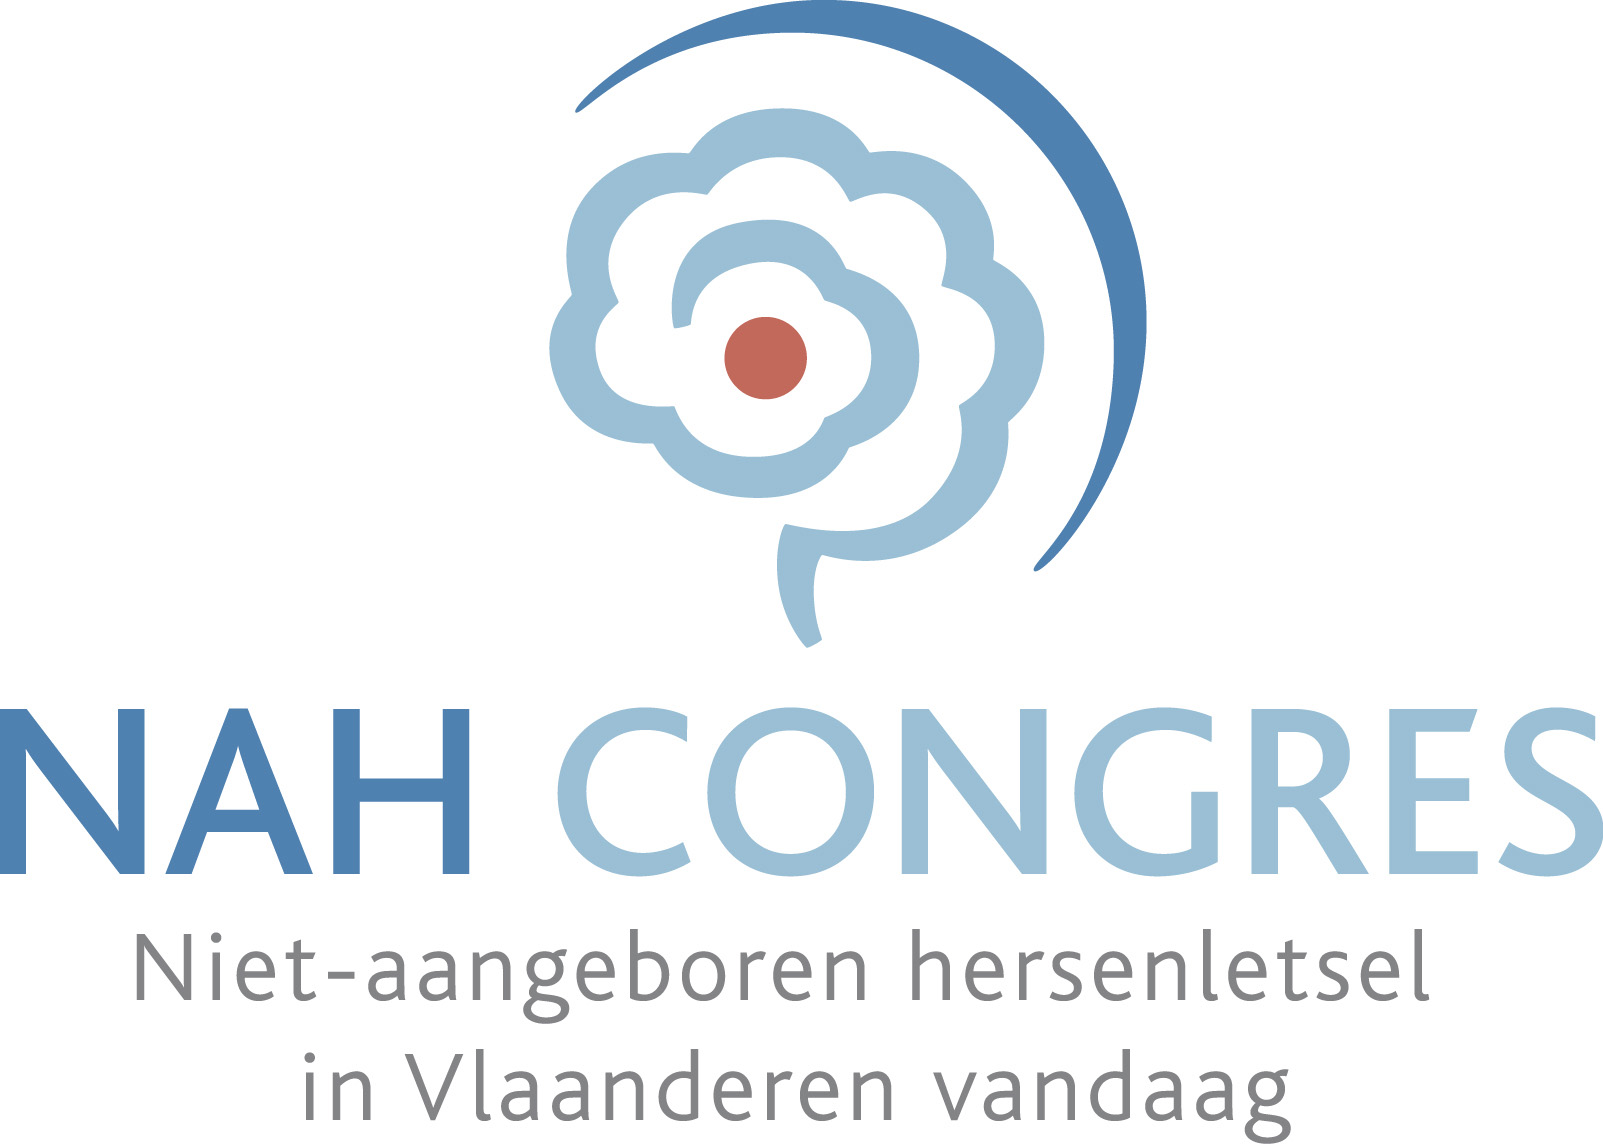 NAH-congres logo